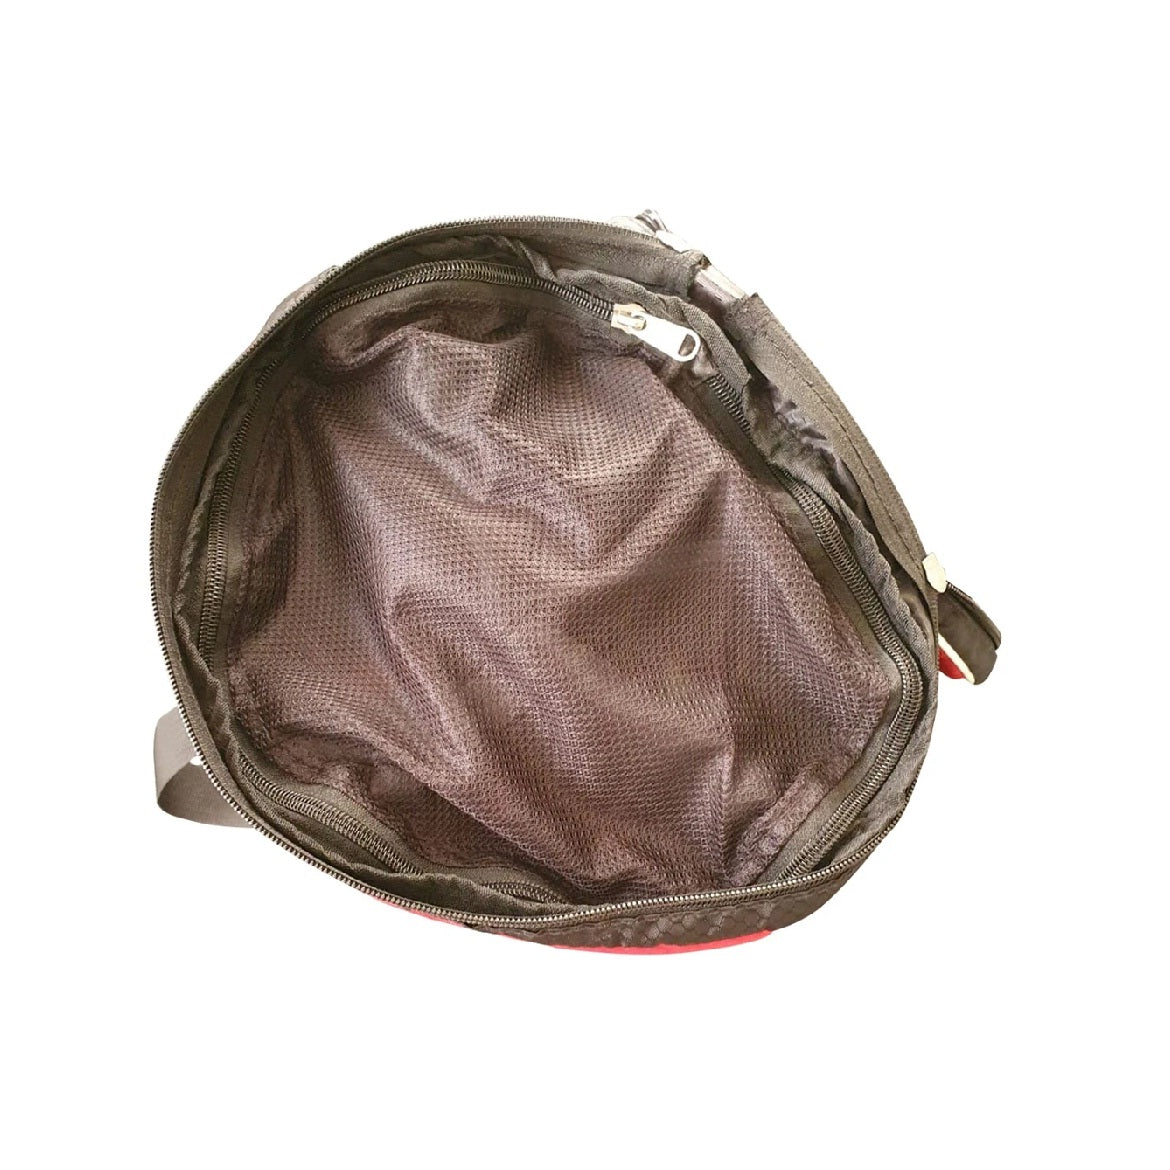 GA Ball Case Bag